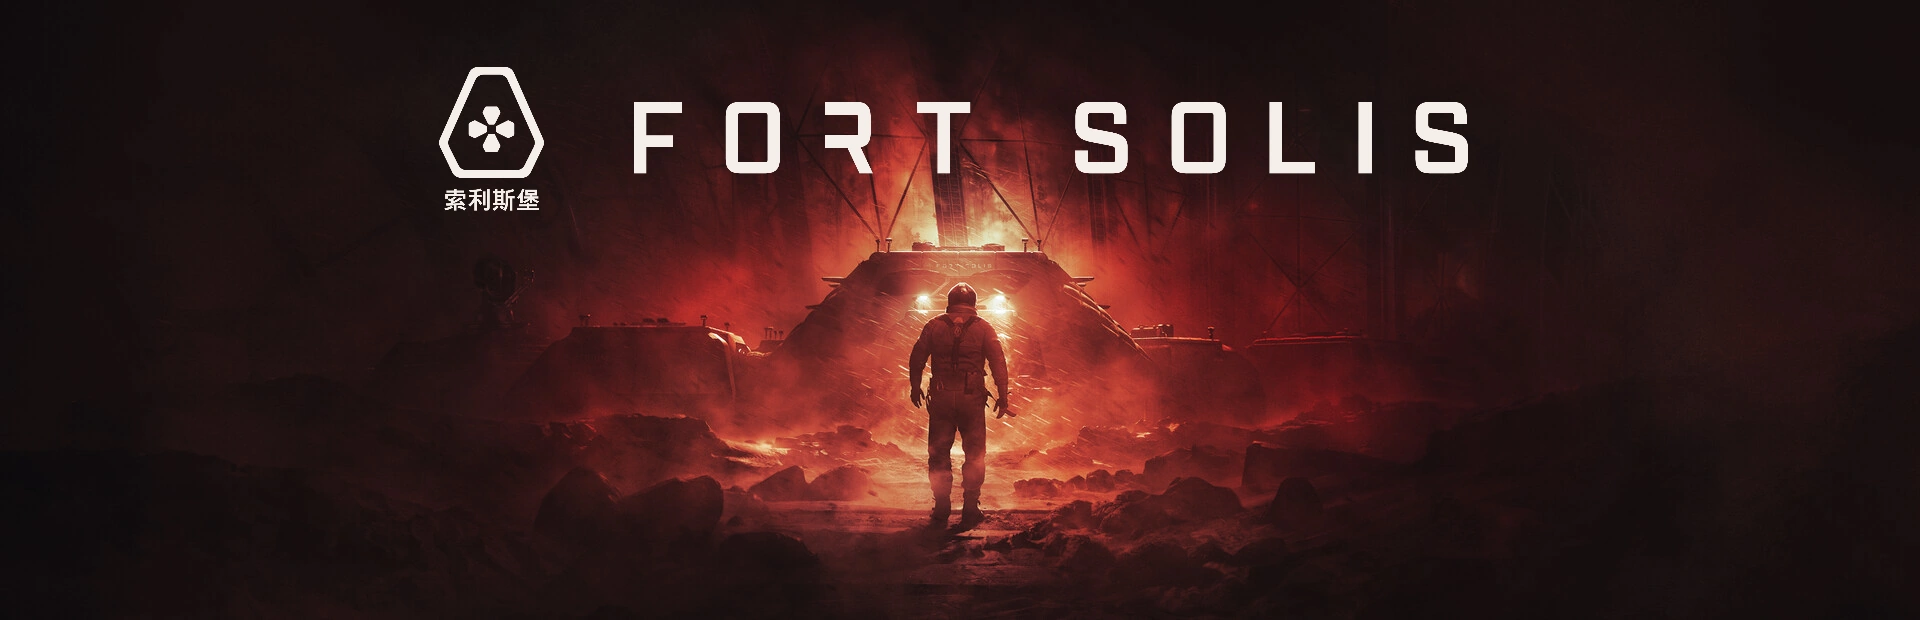 دانلود بازی Fort Solis برای کامپیوتر | گیمباتو